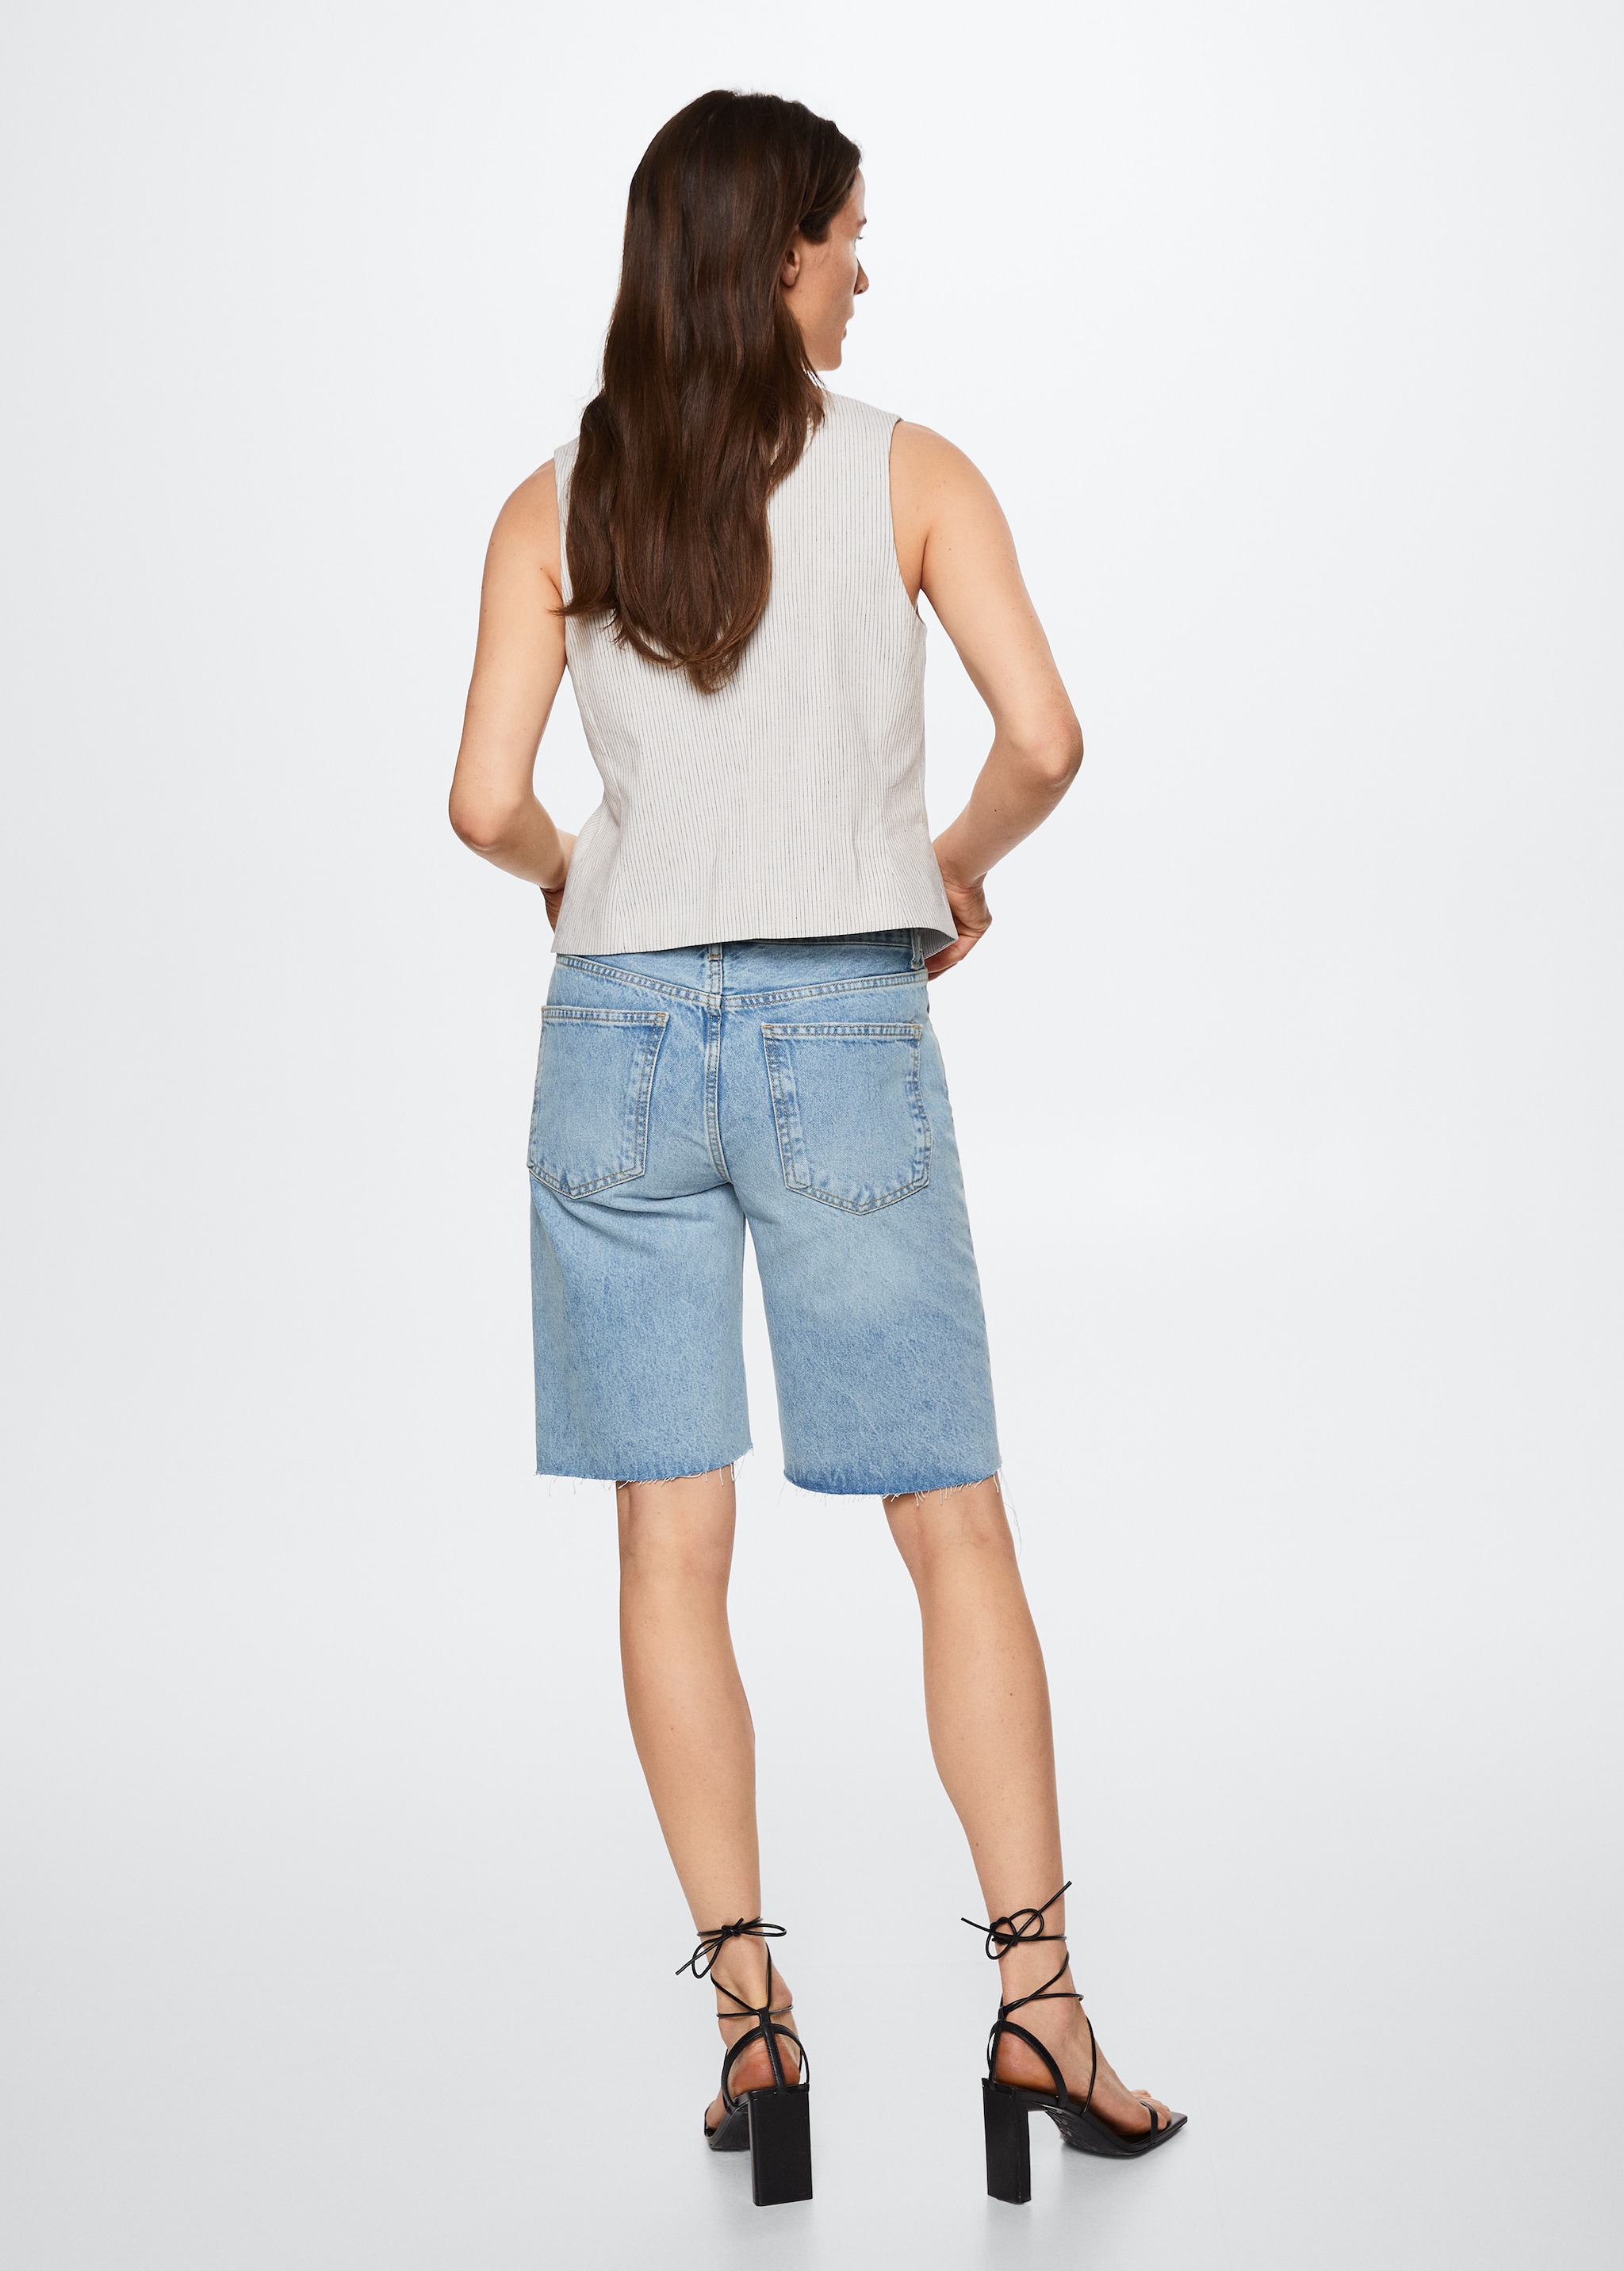 Jeans-Bermudashorts mit ausgefranstem Saum - Rückseite des Artikels